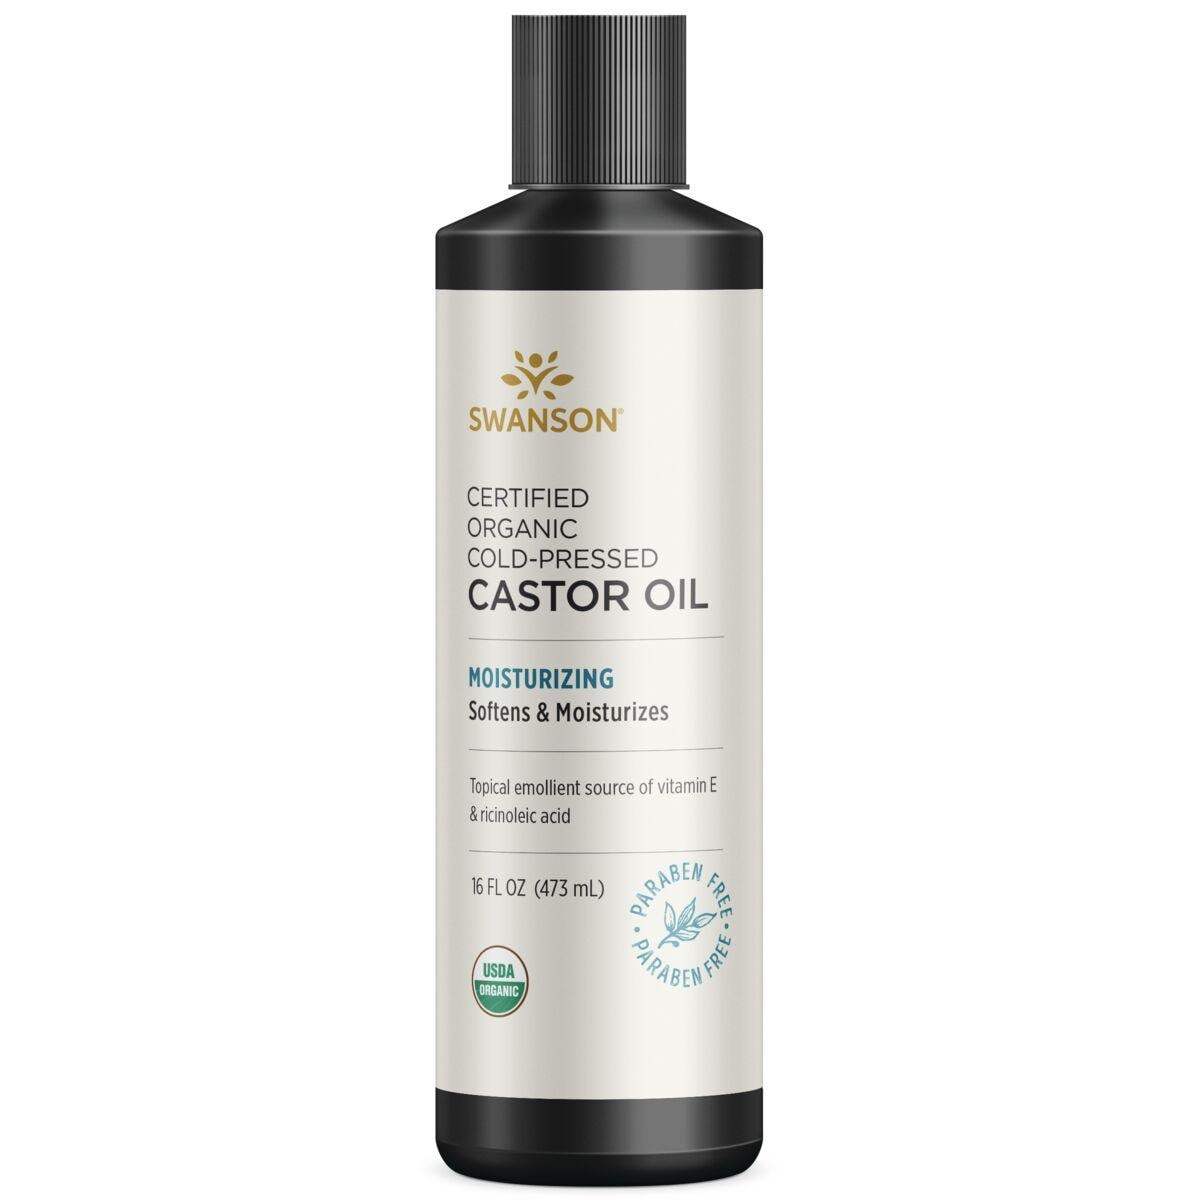 Swanson Premium Certified Organic Cold-Pressed Castor Oil 16 fl oz Liquid